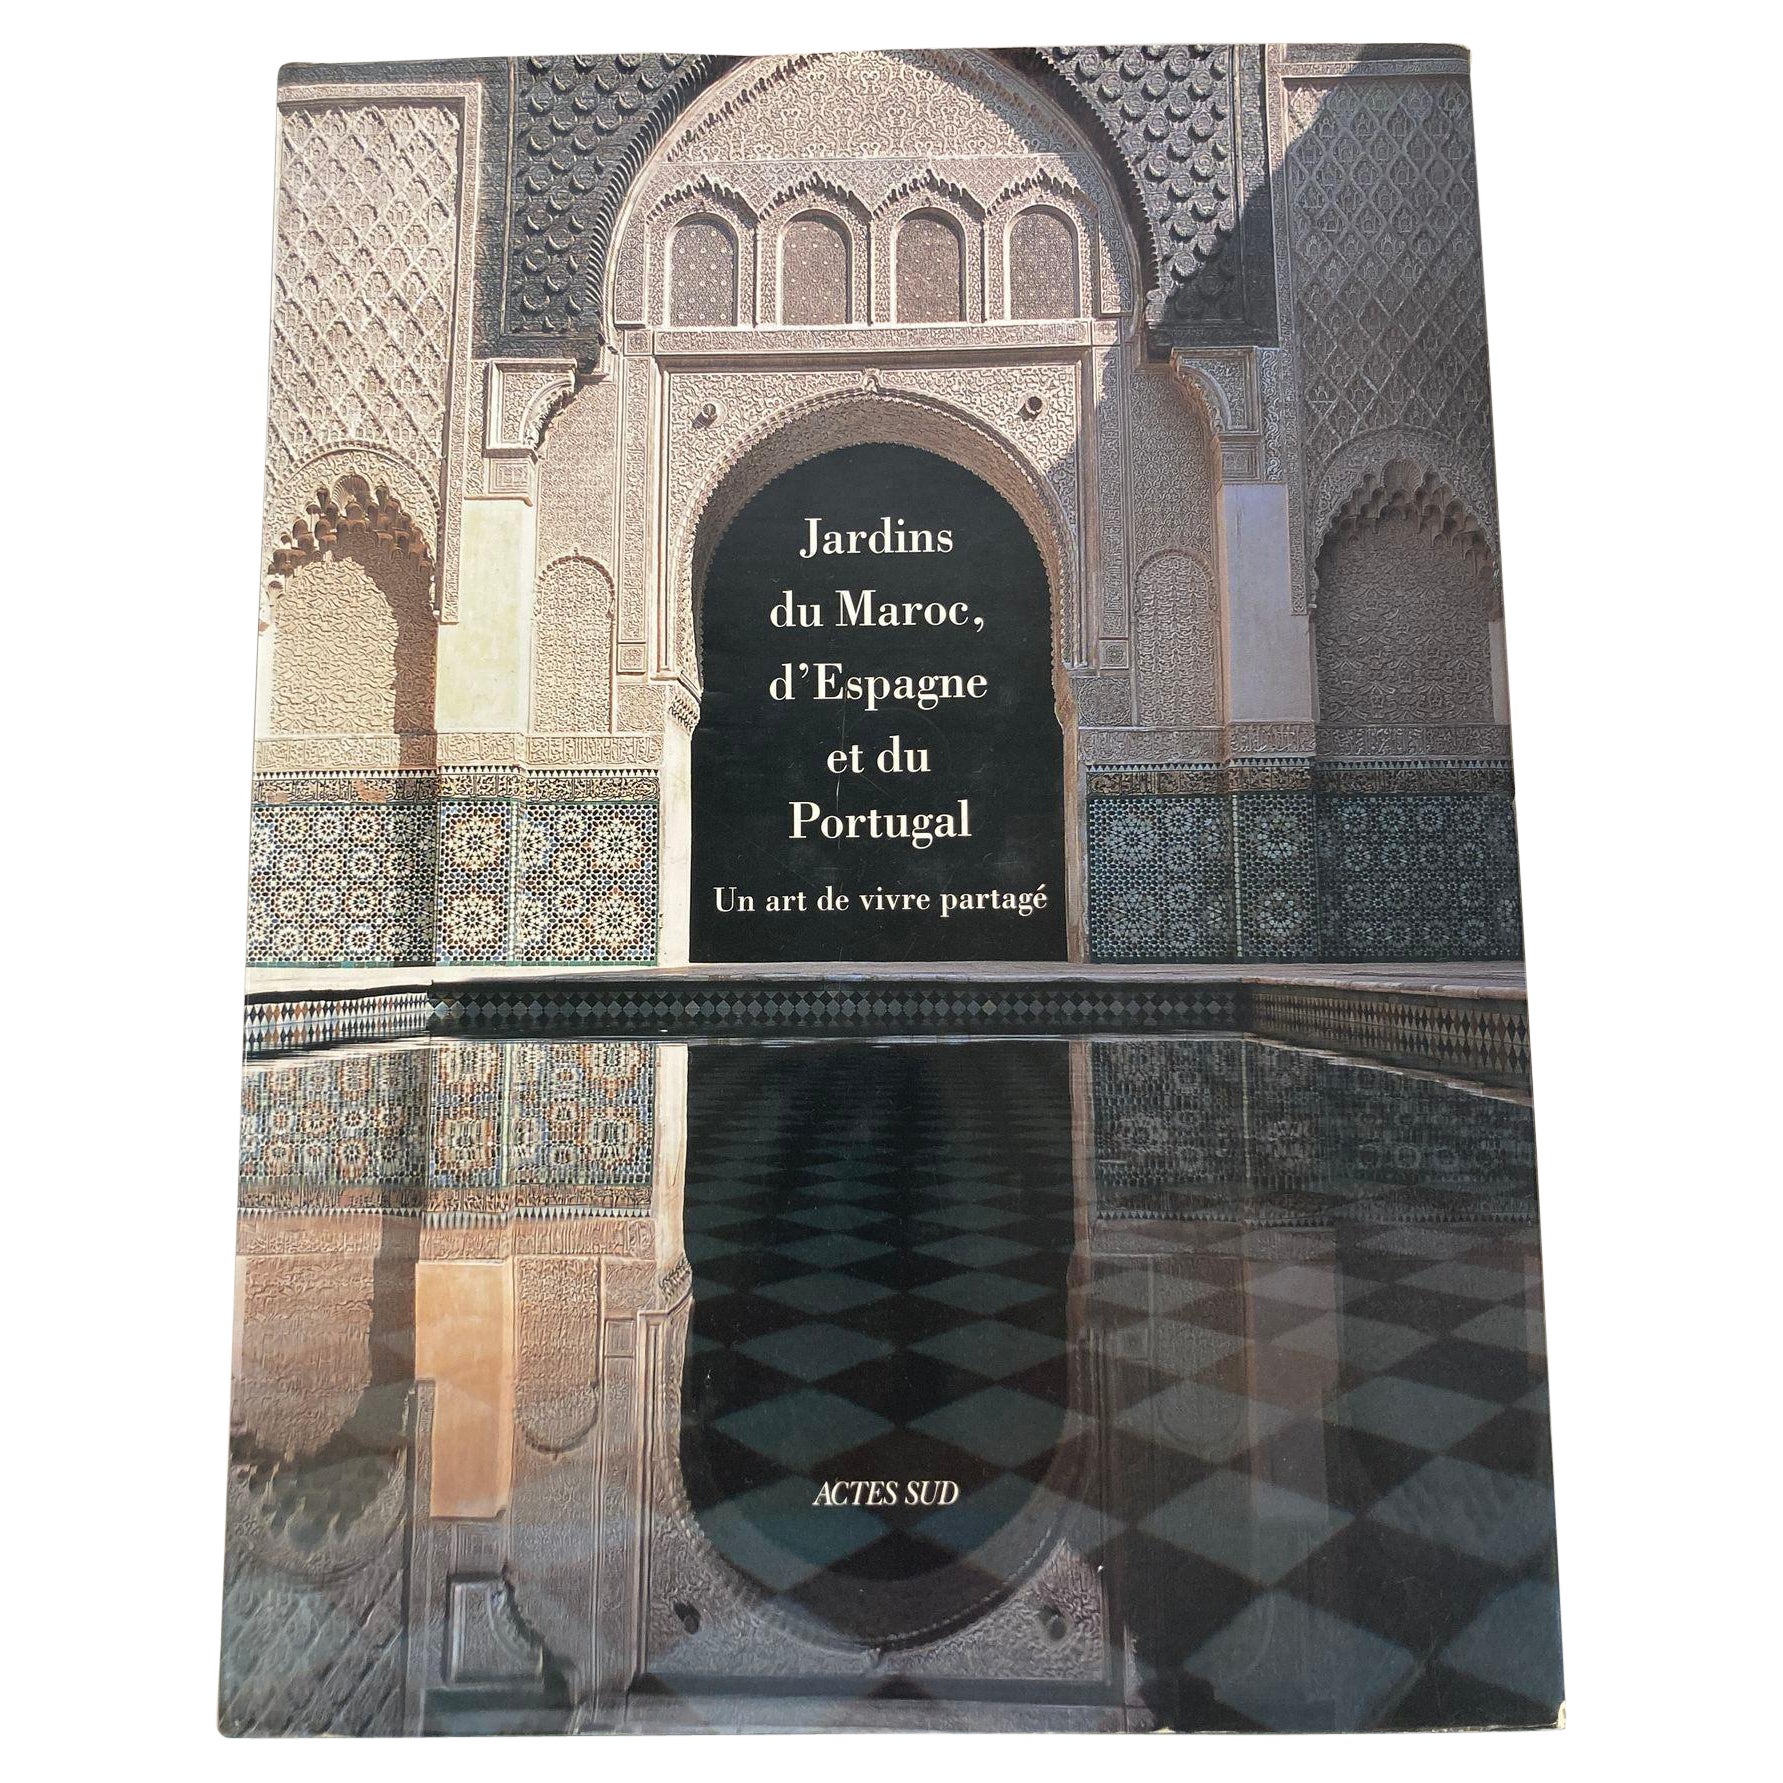 Jardin du Maroc, de l'Espagne et du Portugal Livre relié Ed. française